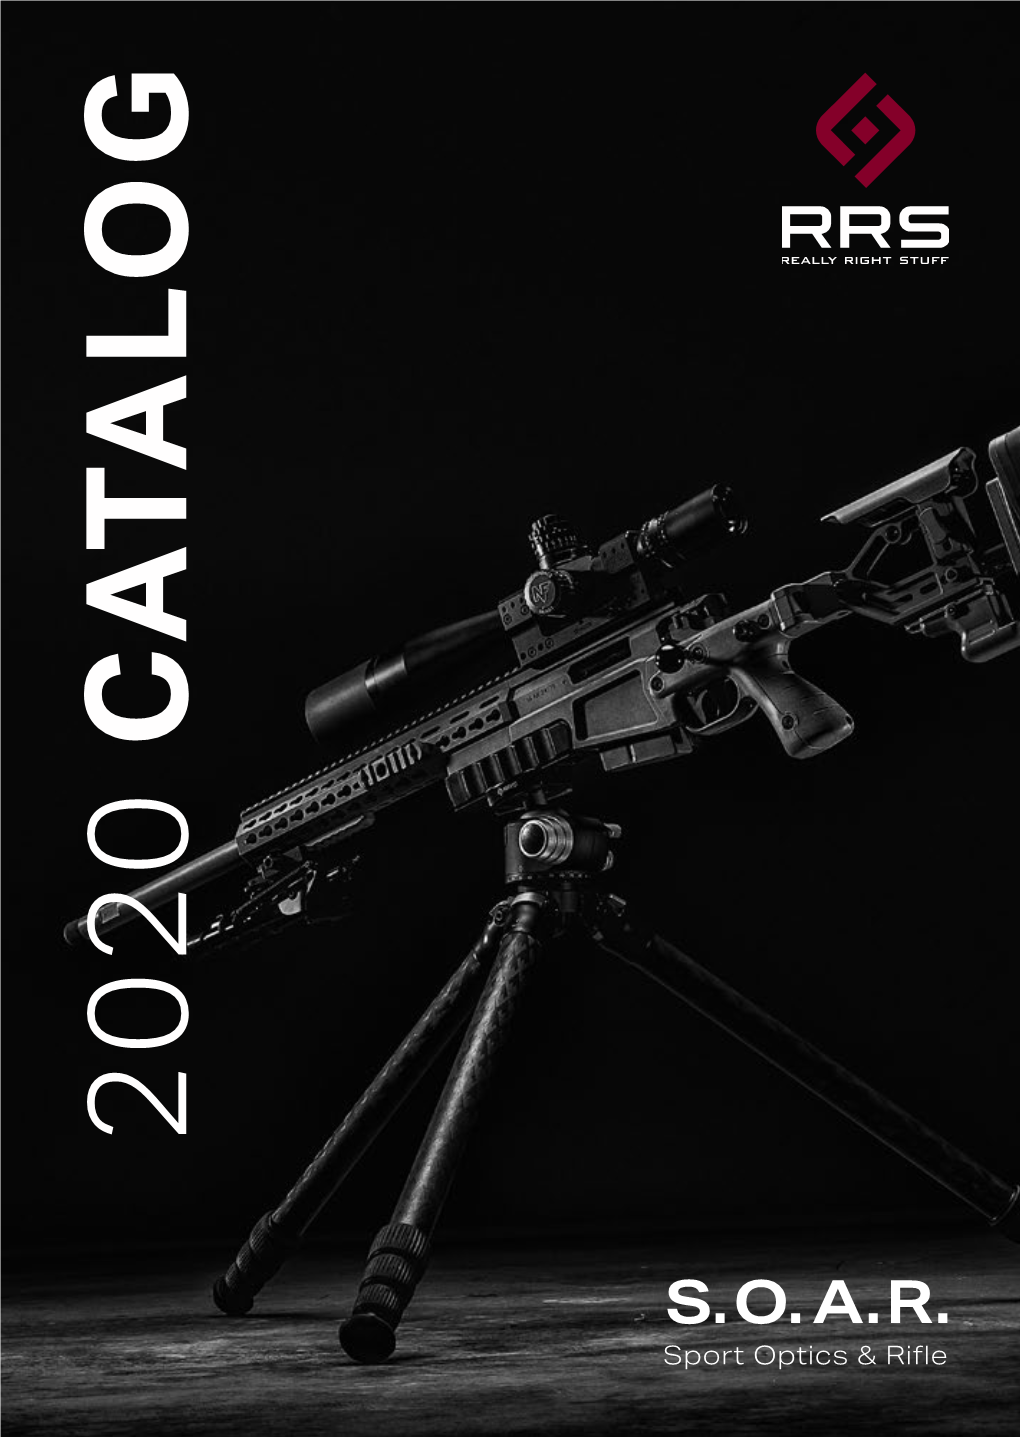 S.O.A.R. Sport Optics & Rifle RRS S.O.A.R